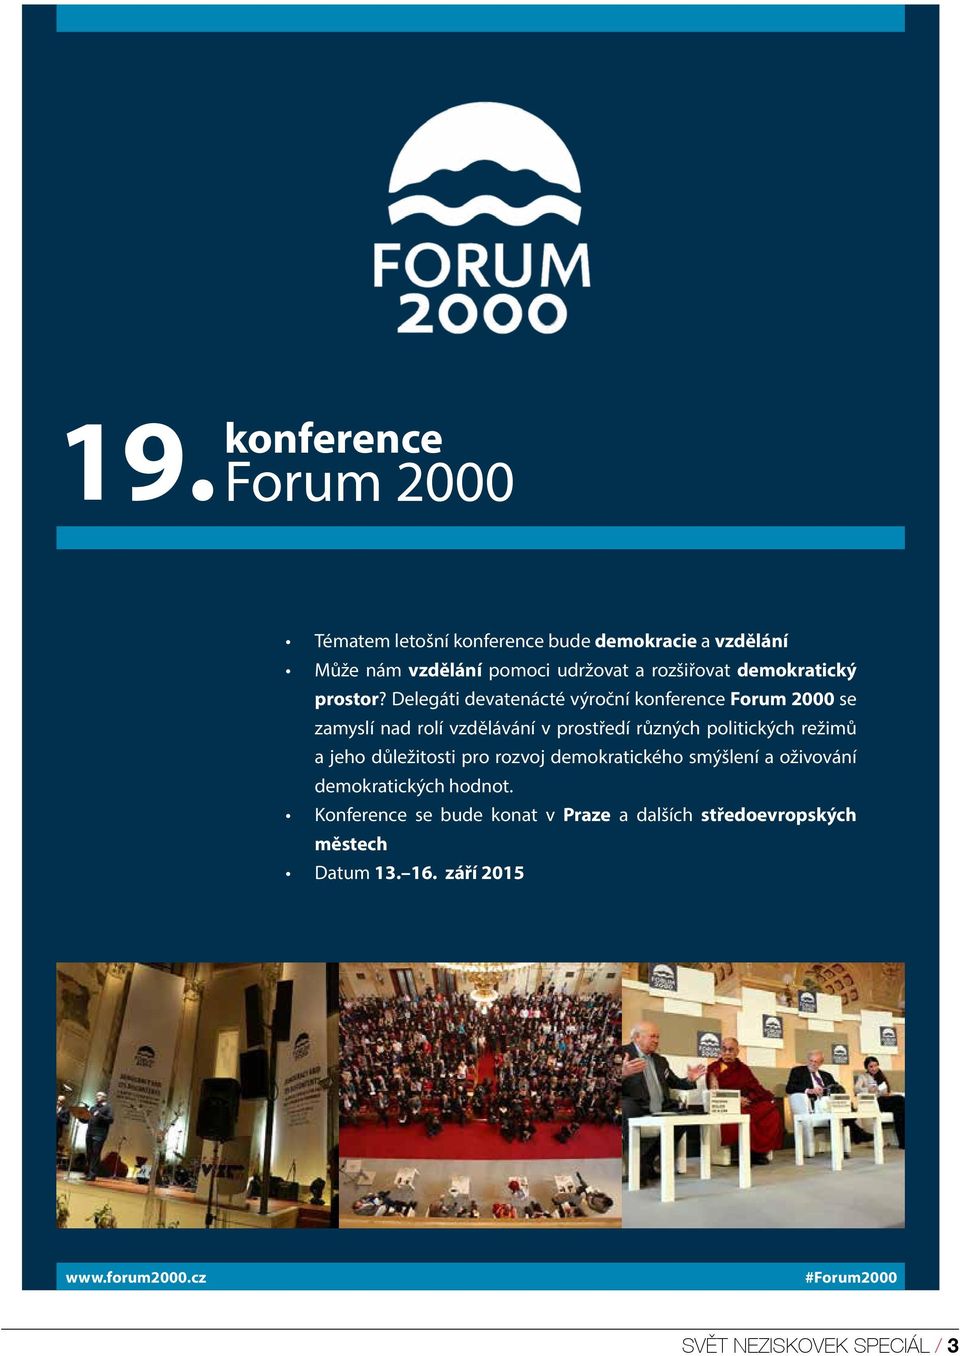 Delegáti devatenácté výroční konference Forum 2000 se zamyslí nad rolí vzdělávání v prostředí různých politických režimů a